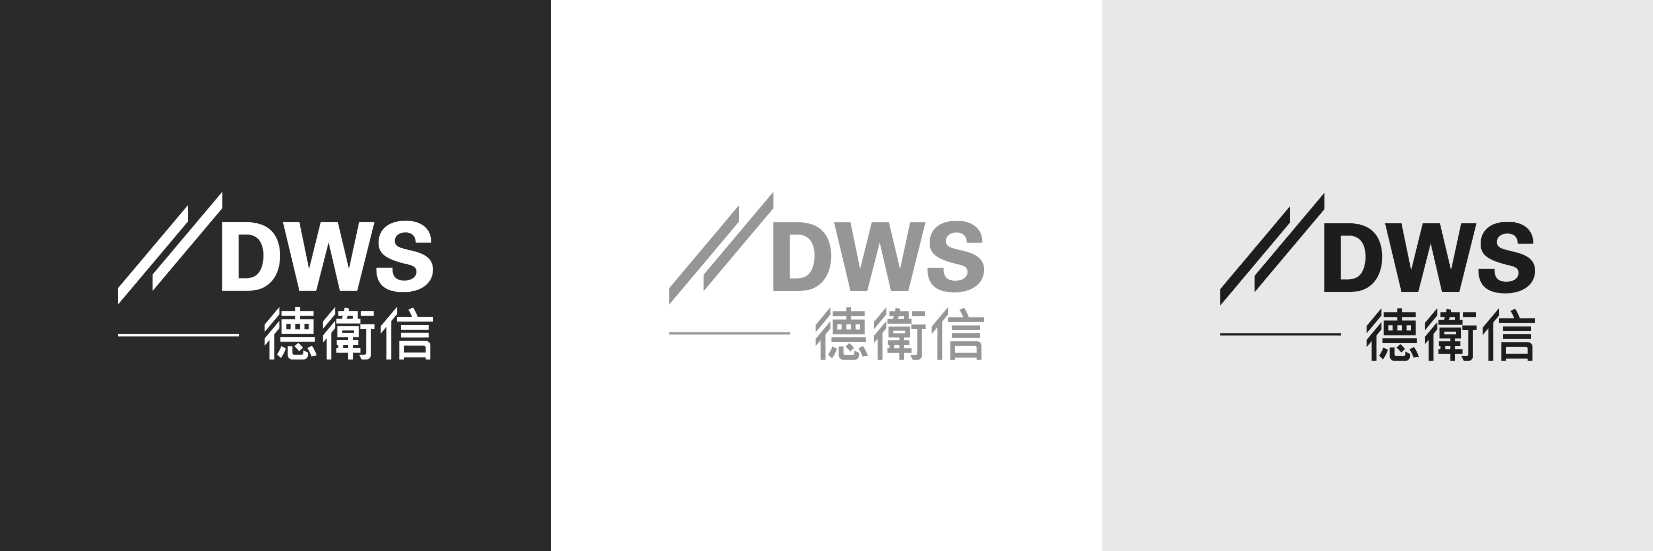 dws-chinese-logo